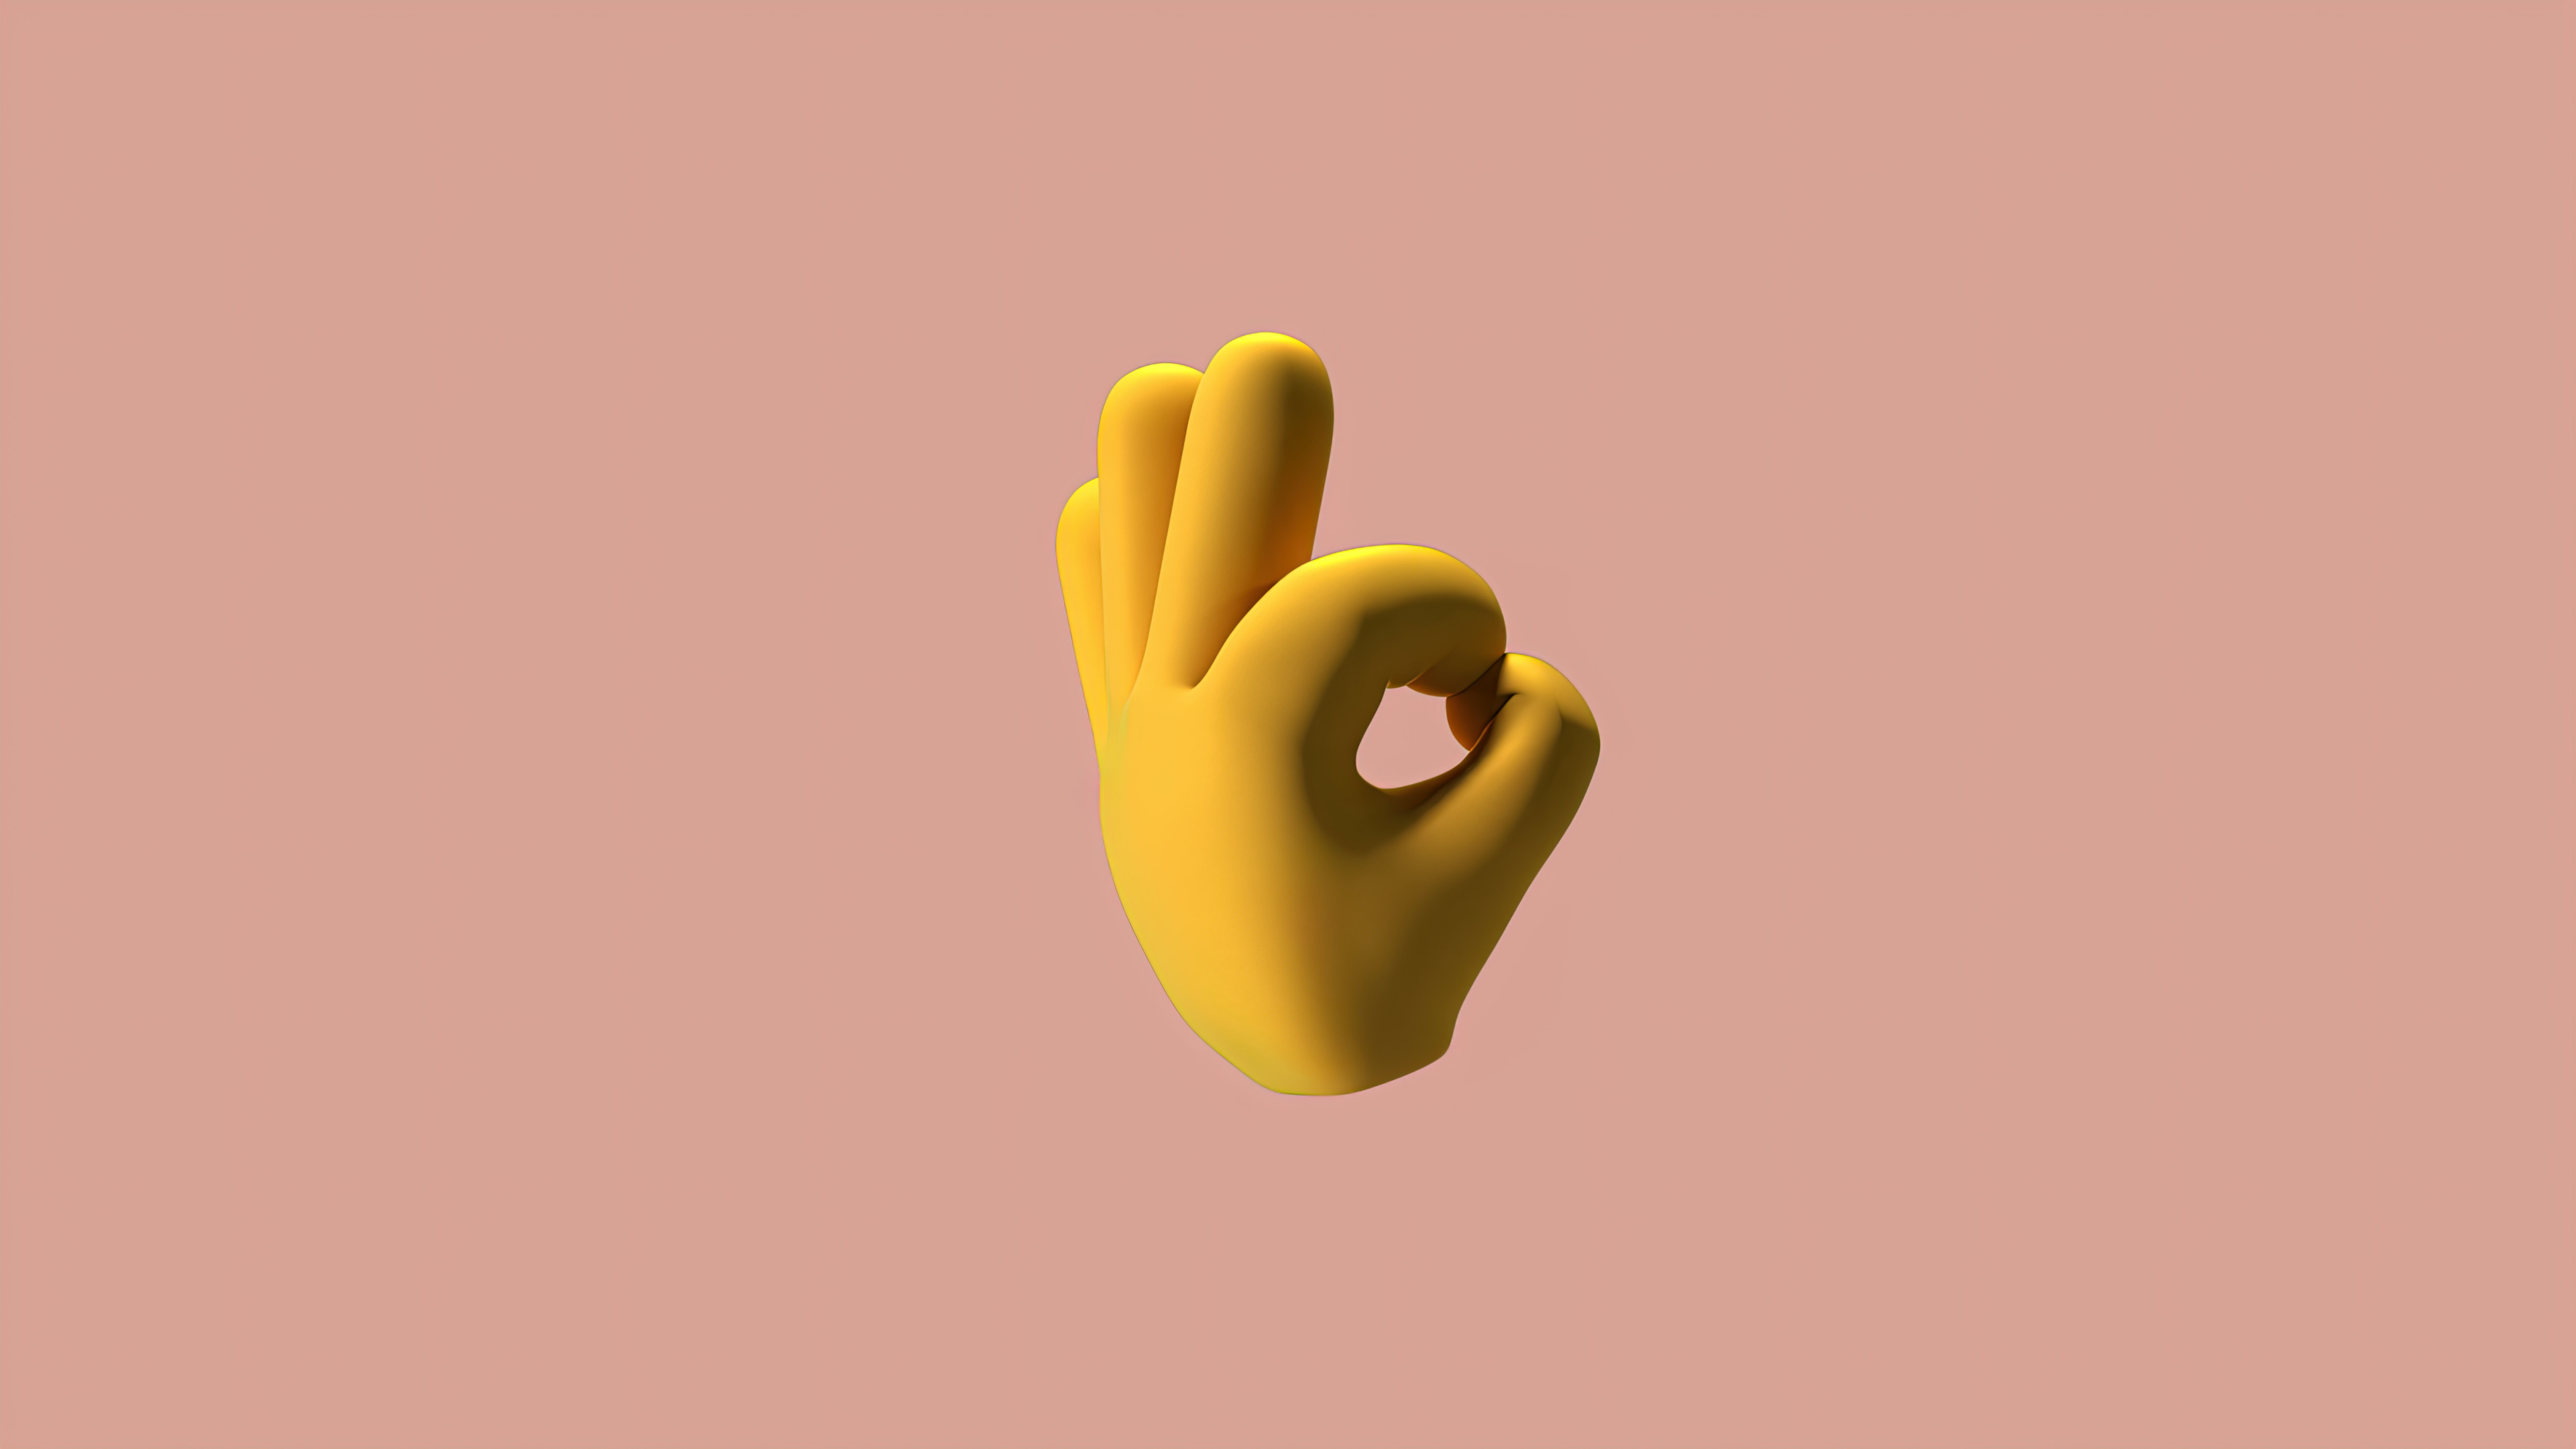 A 3D design of a hand